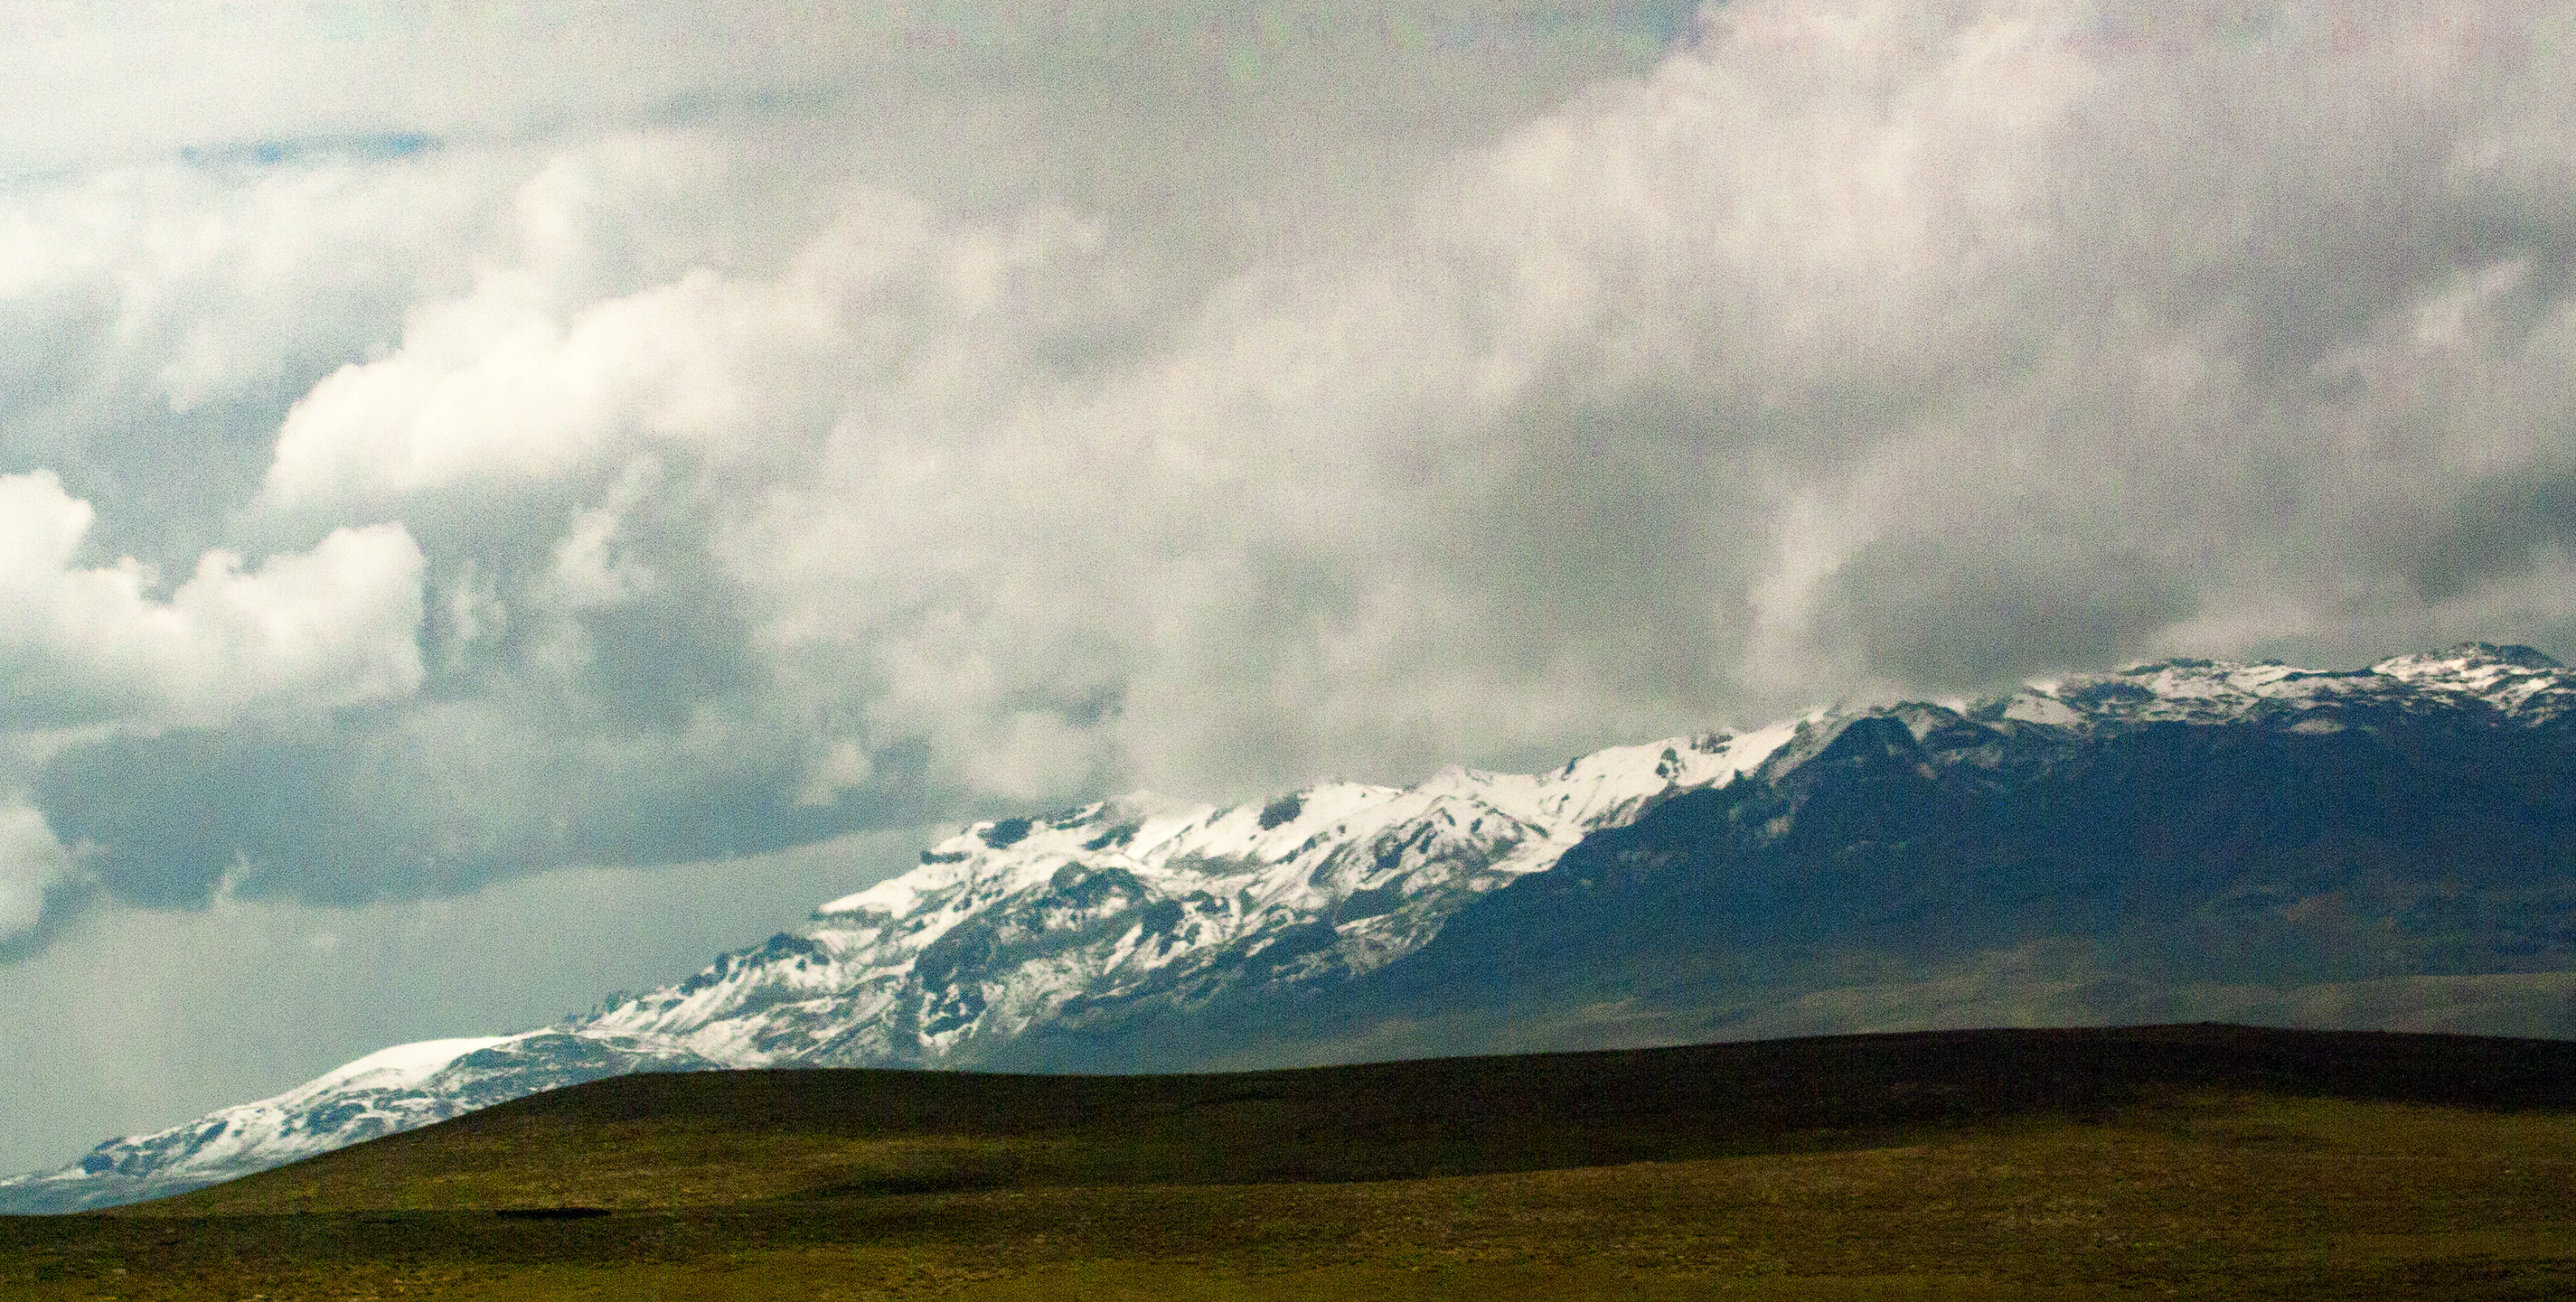 Los picos nevados Carretera de Arequipa a Puno, Perú